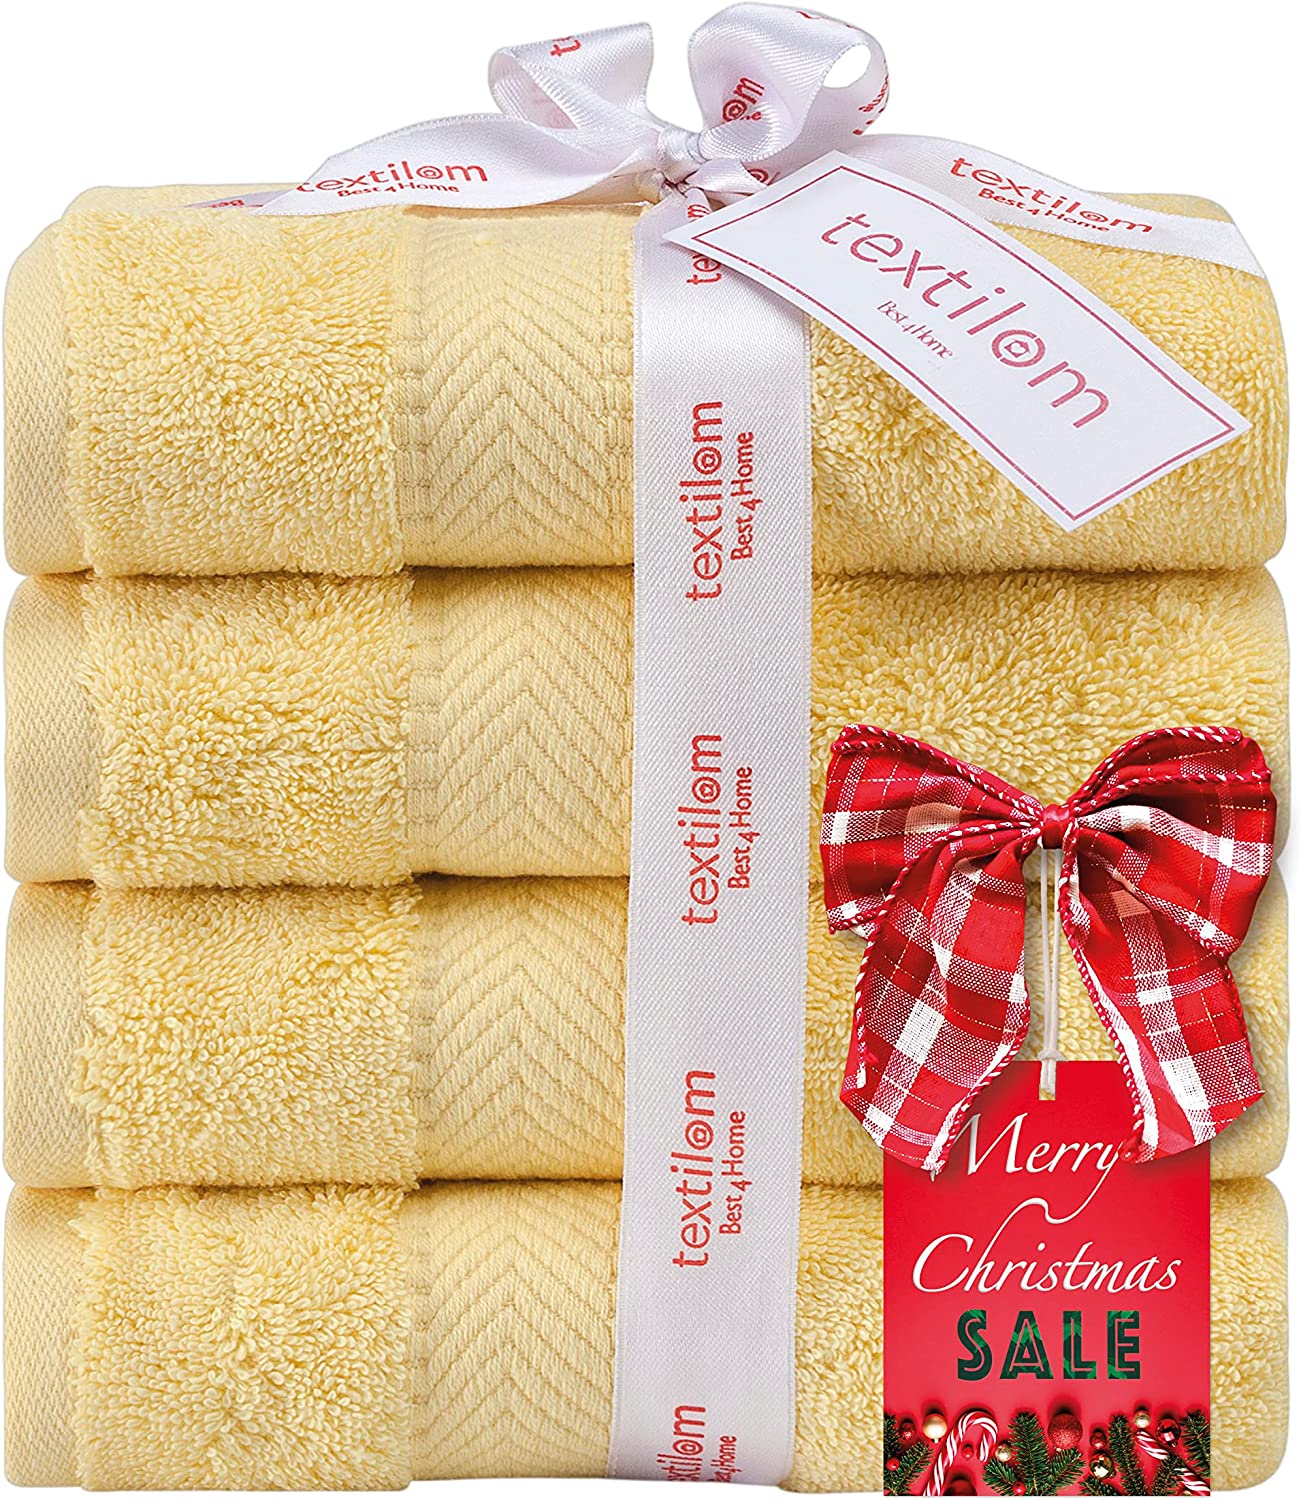 TEXTILOM 100% Turkish Cotton 6 Pcs Bath Towel Set, Luxury Bath Towels for